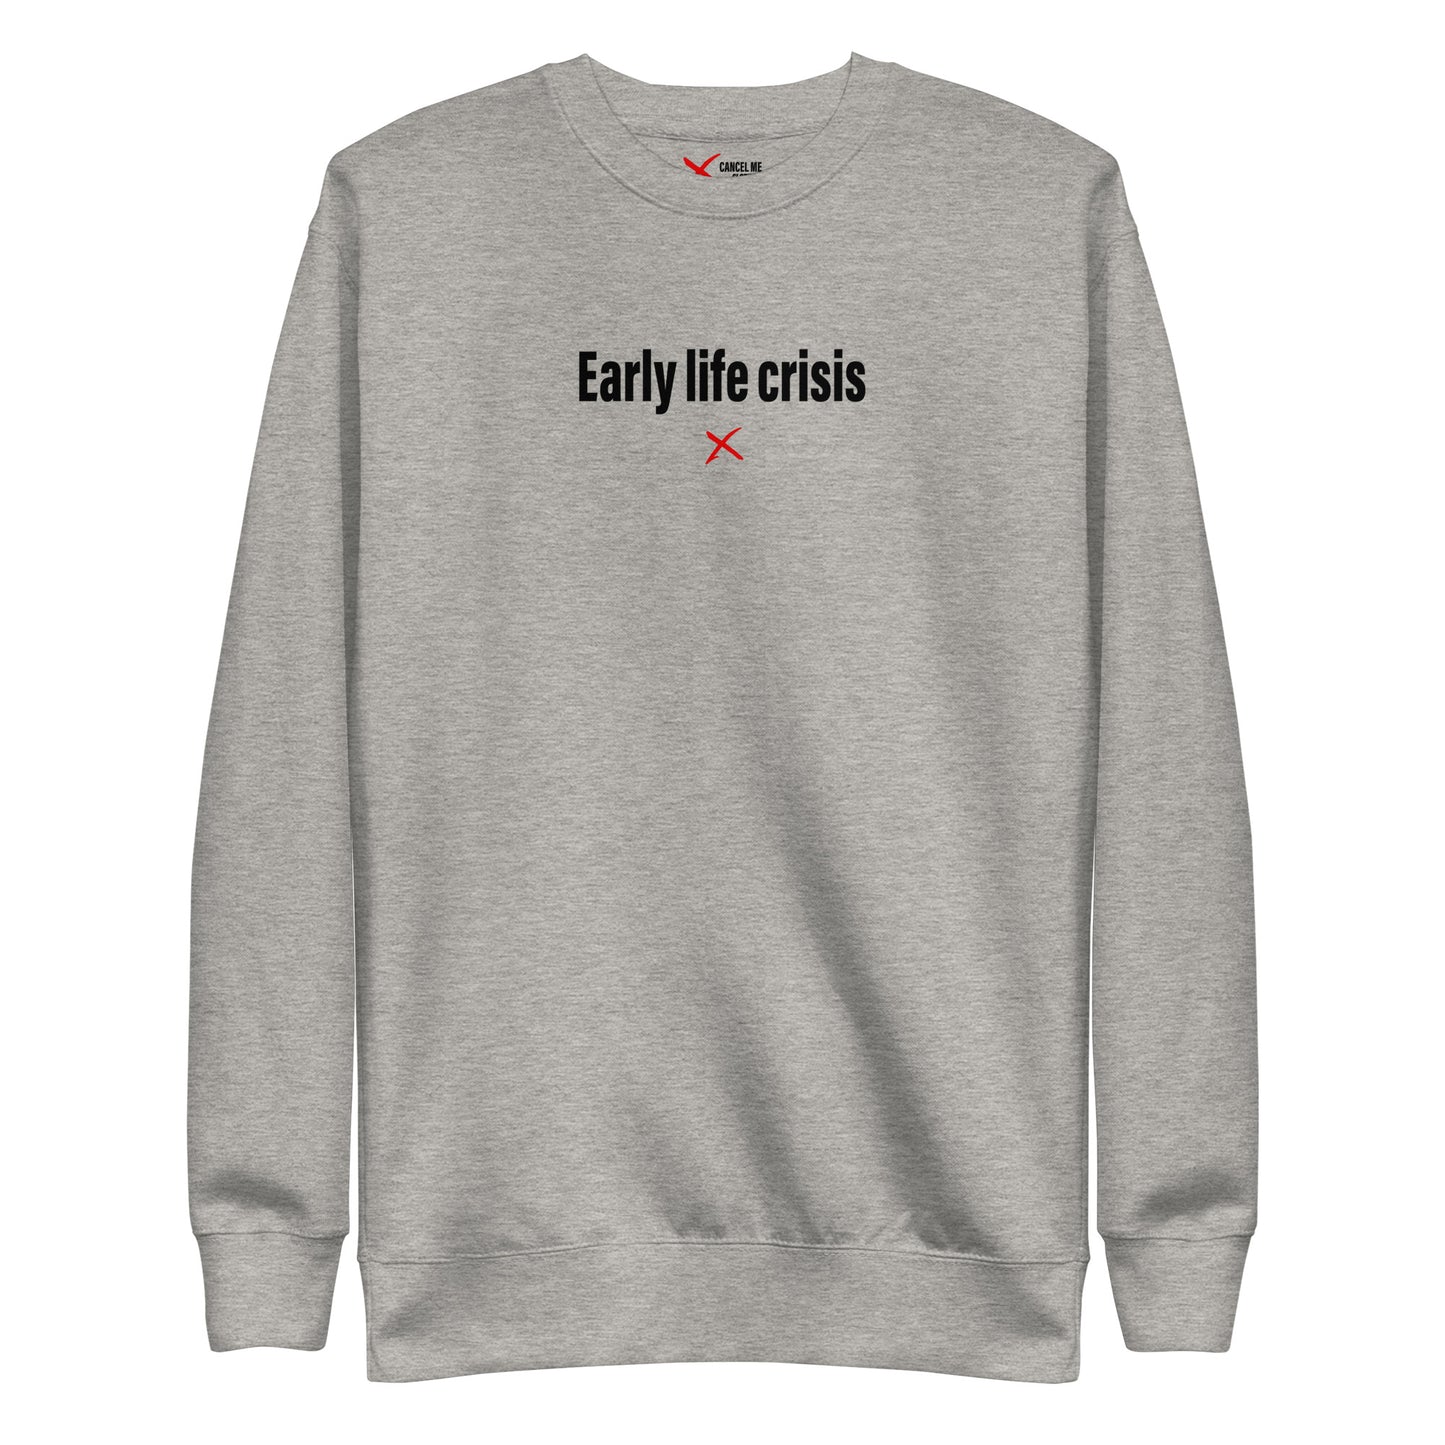 Early life crisis - Sweatshirt